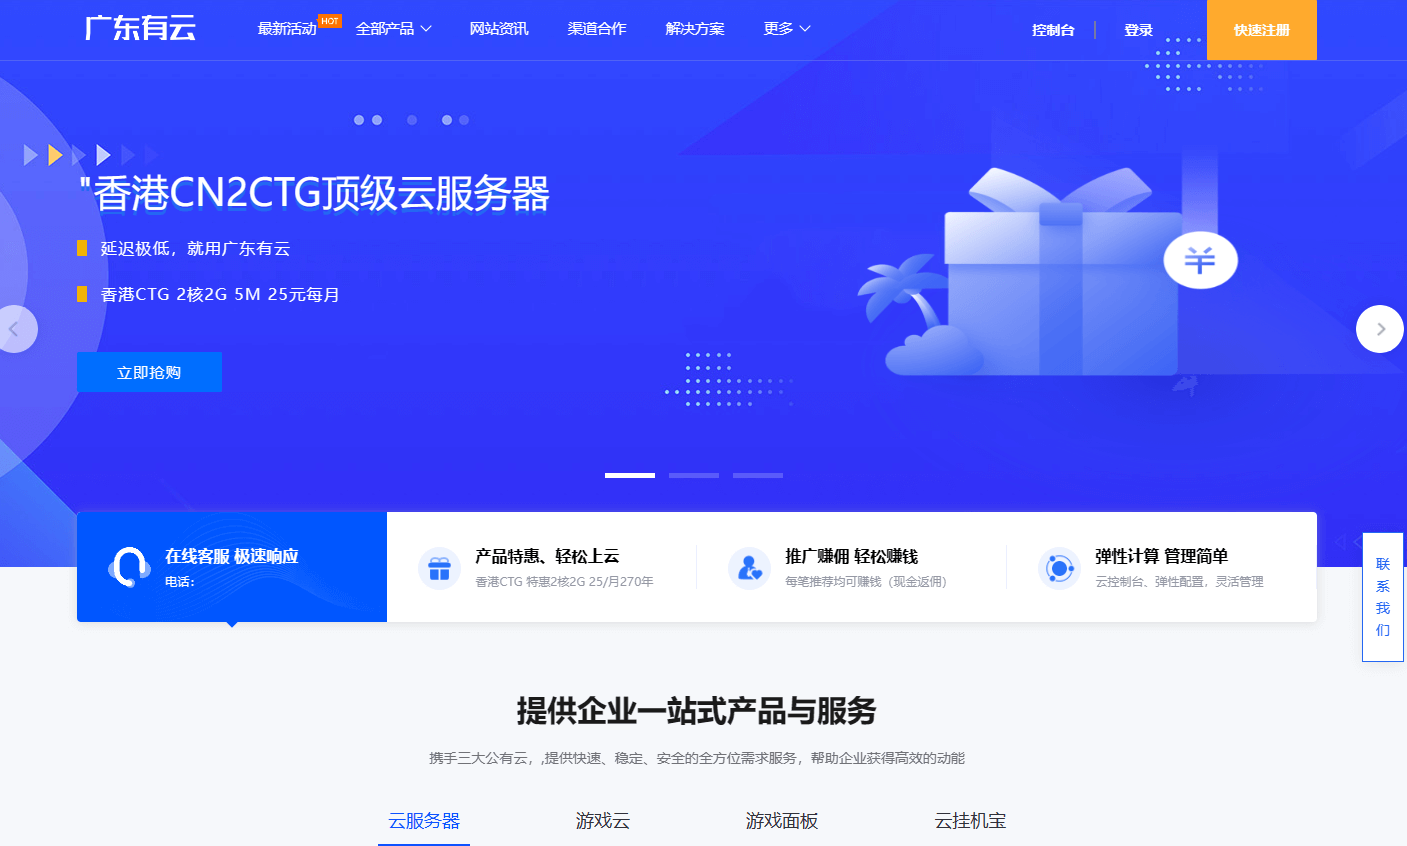 有云：香港CN2 GIA VPS，月付25元起，2核/2G内存/40G硬盘，限量特惠计划，支持Windows